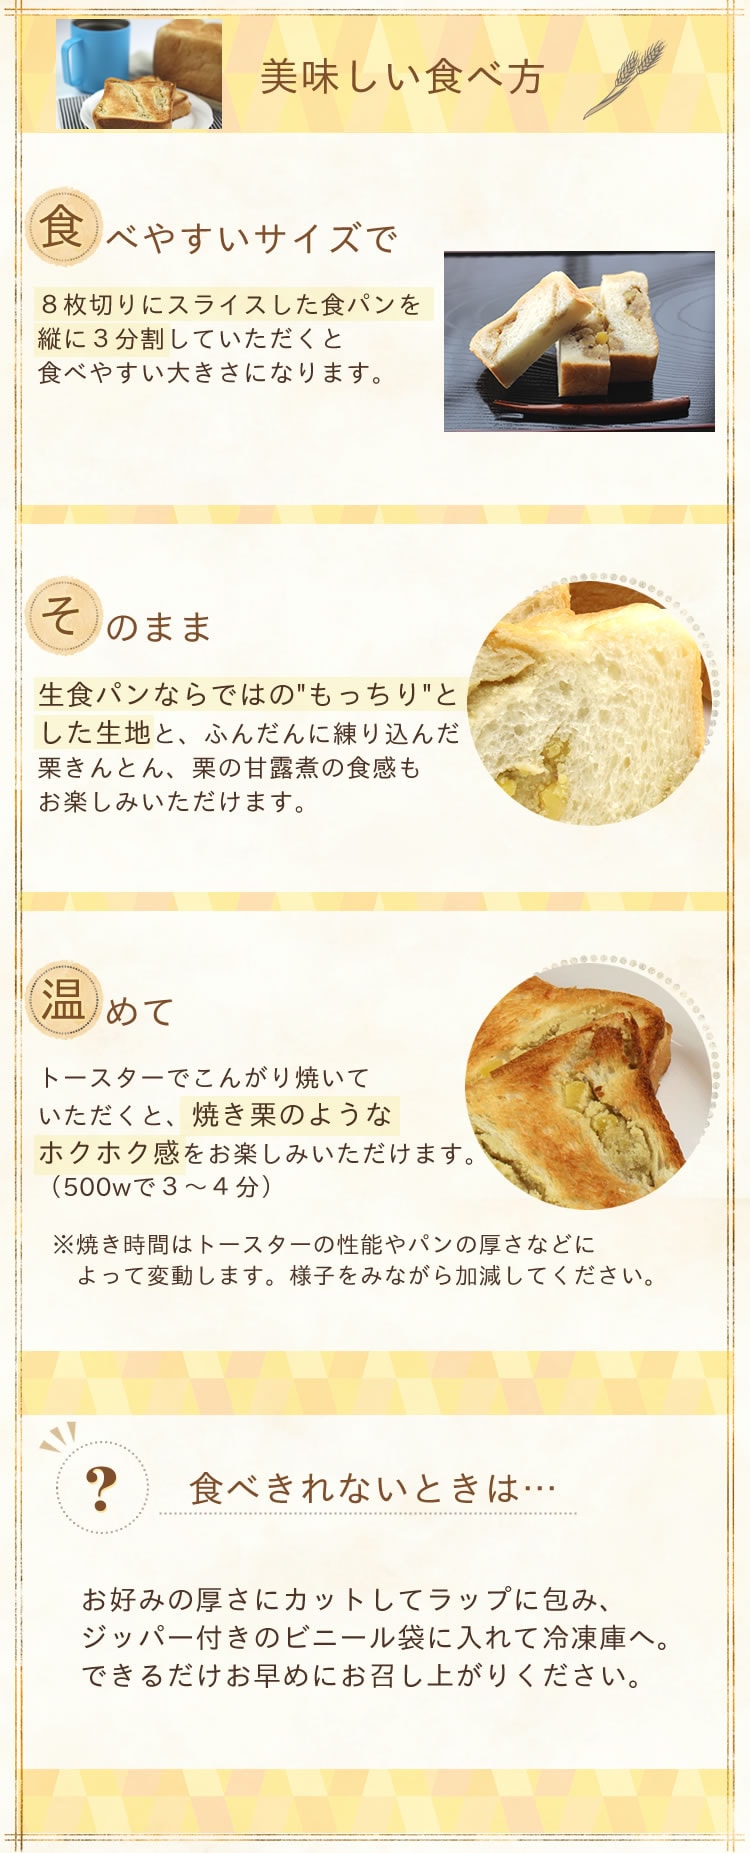 栗きんとん生食パンおいしい食べ方